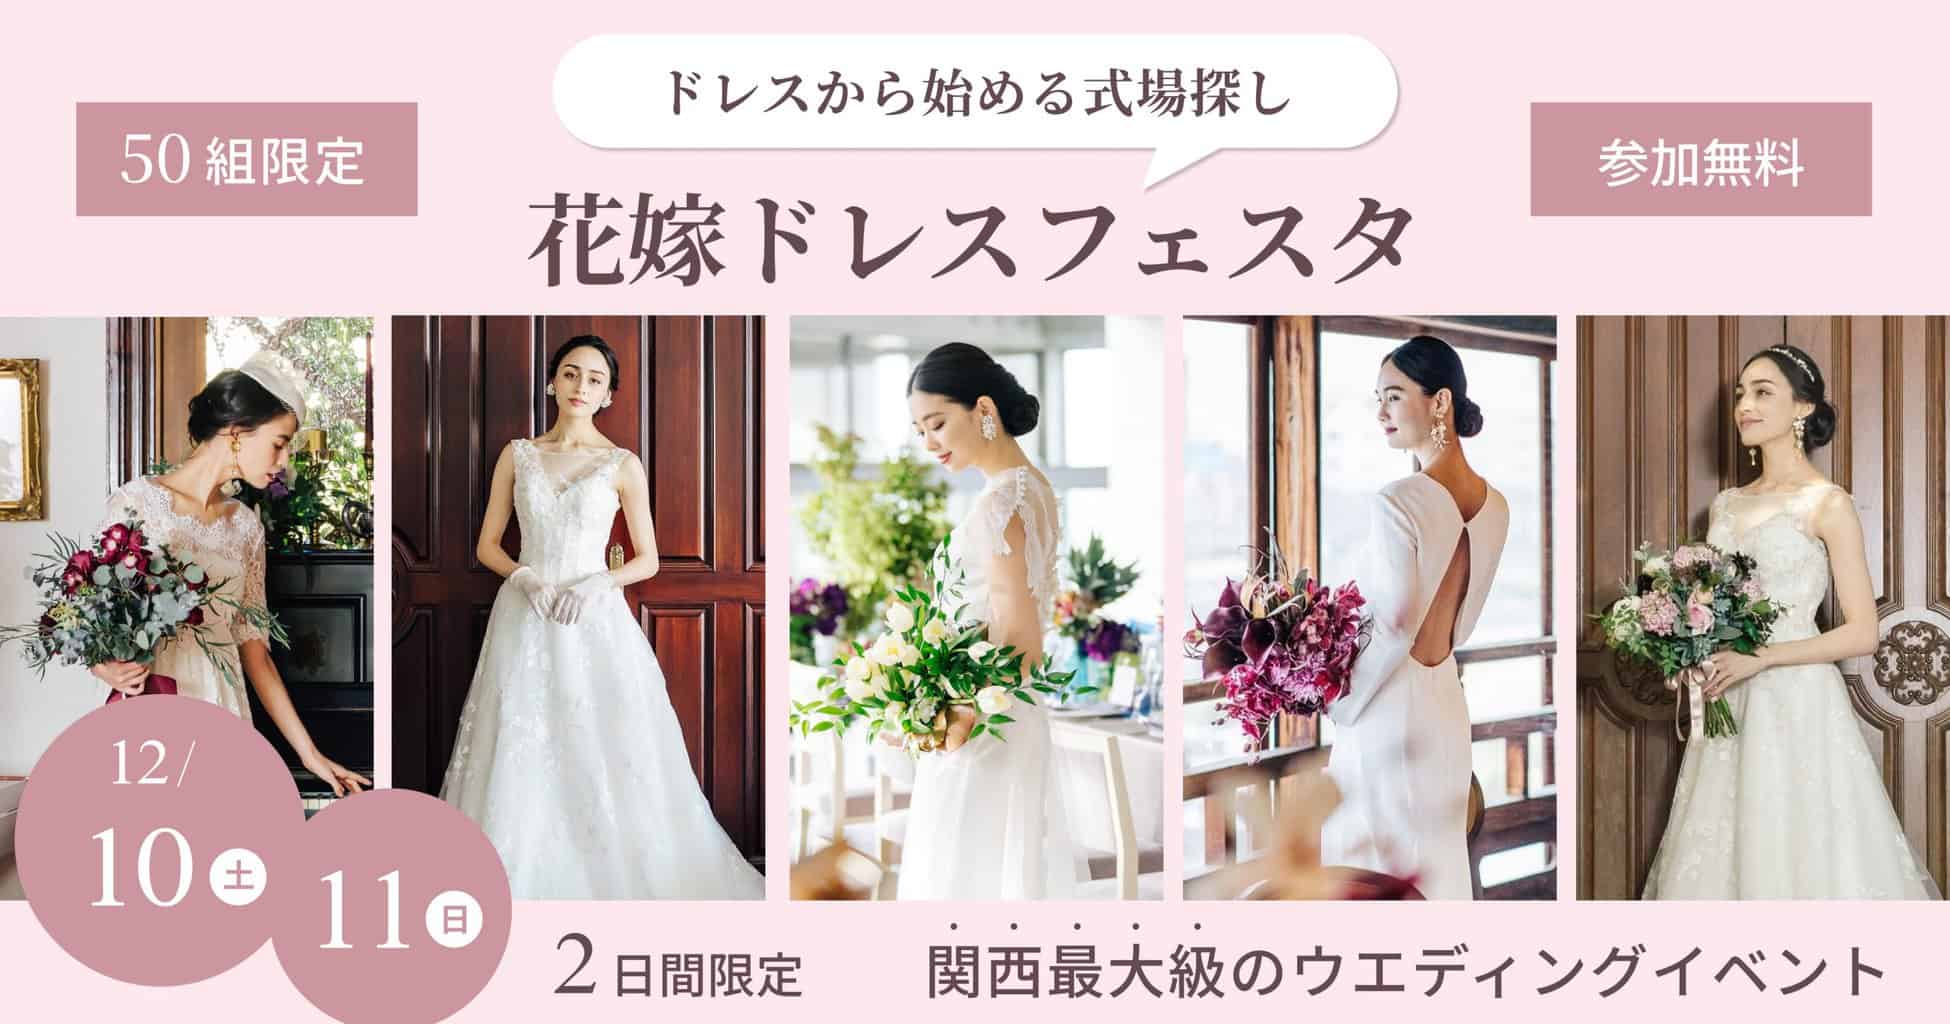 12 10 土 11 日 限定 大阪駅直結 結婚式のイメージ膨らむ 関西最大級のイベント 花嫁ドレスフェスタ 開催 ウェディングニュース